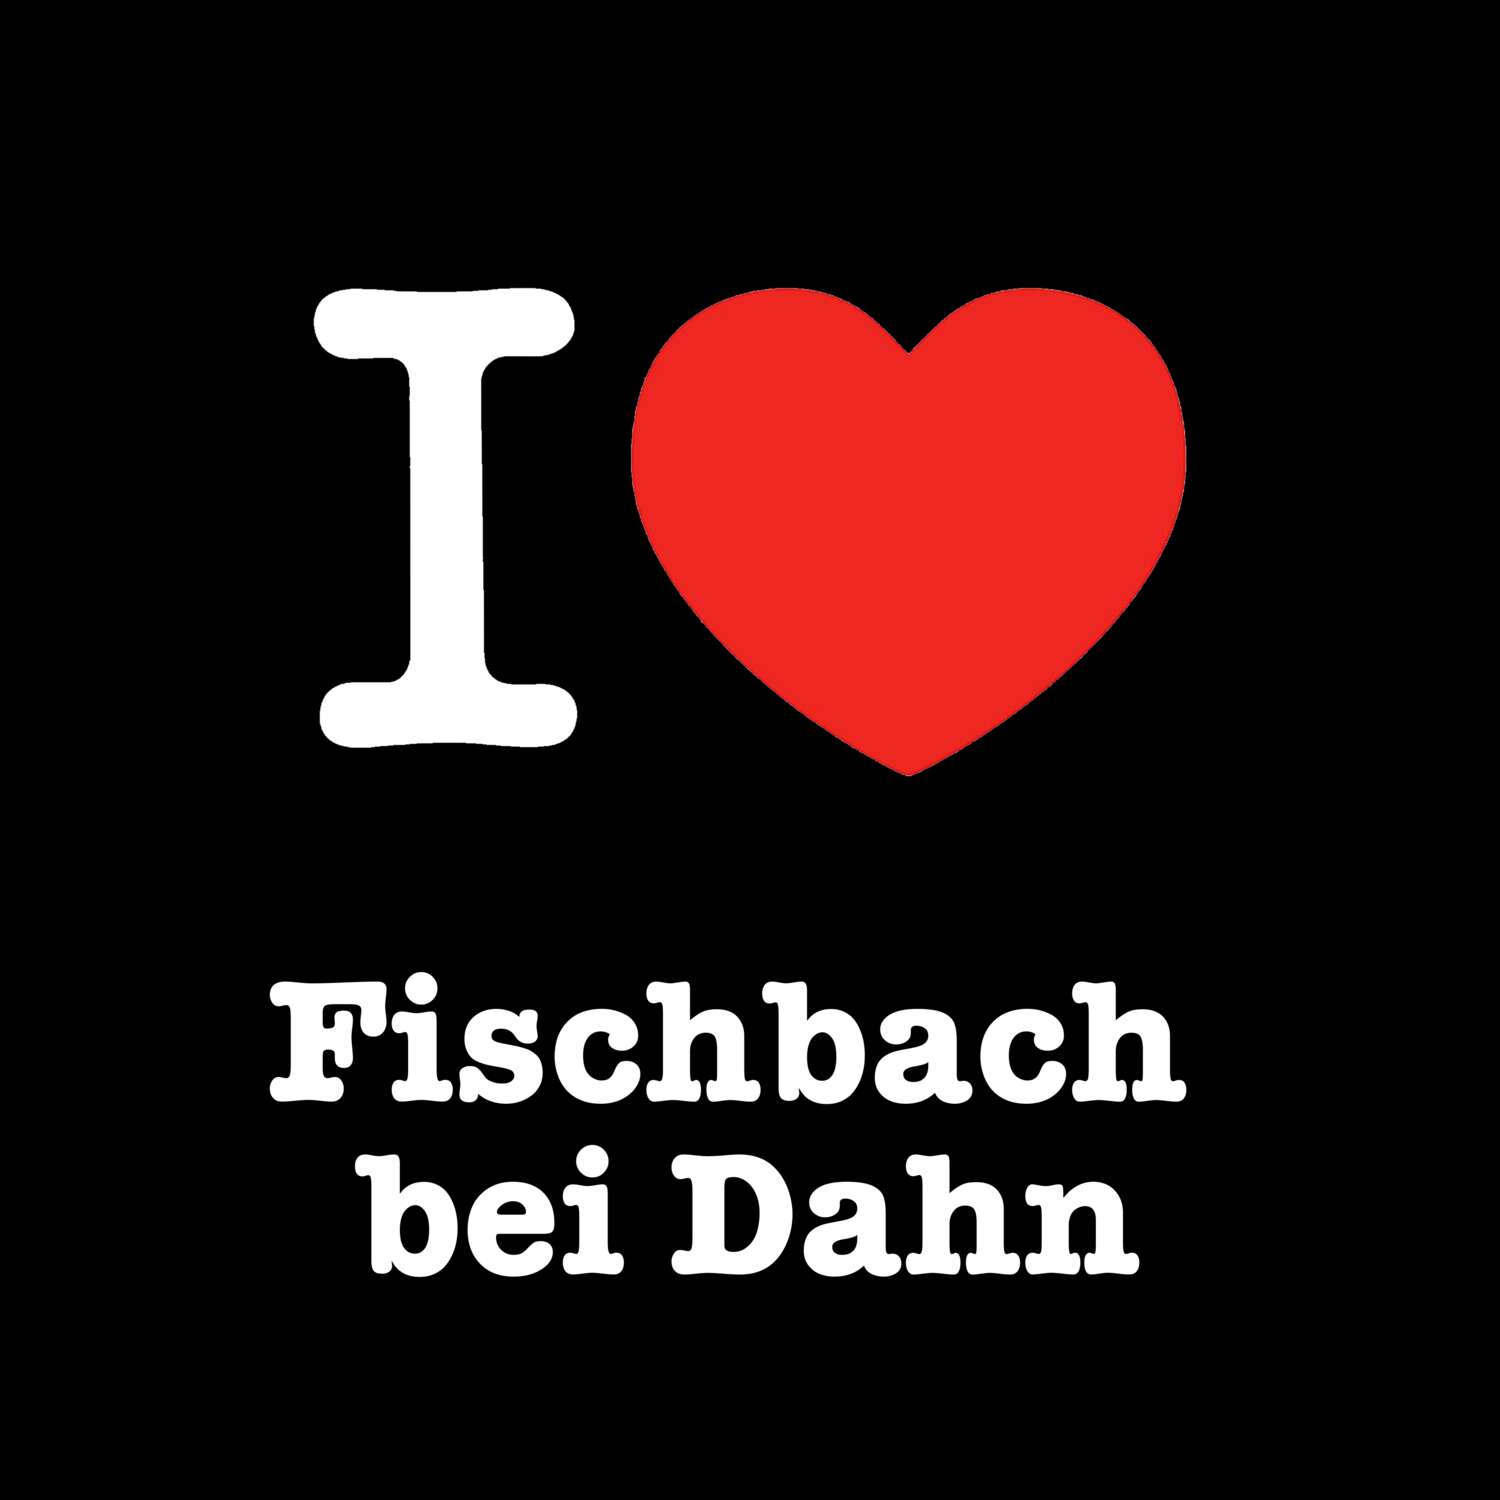 Fischbach bei Dahn T-Shirt »I love«